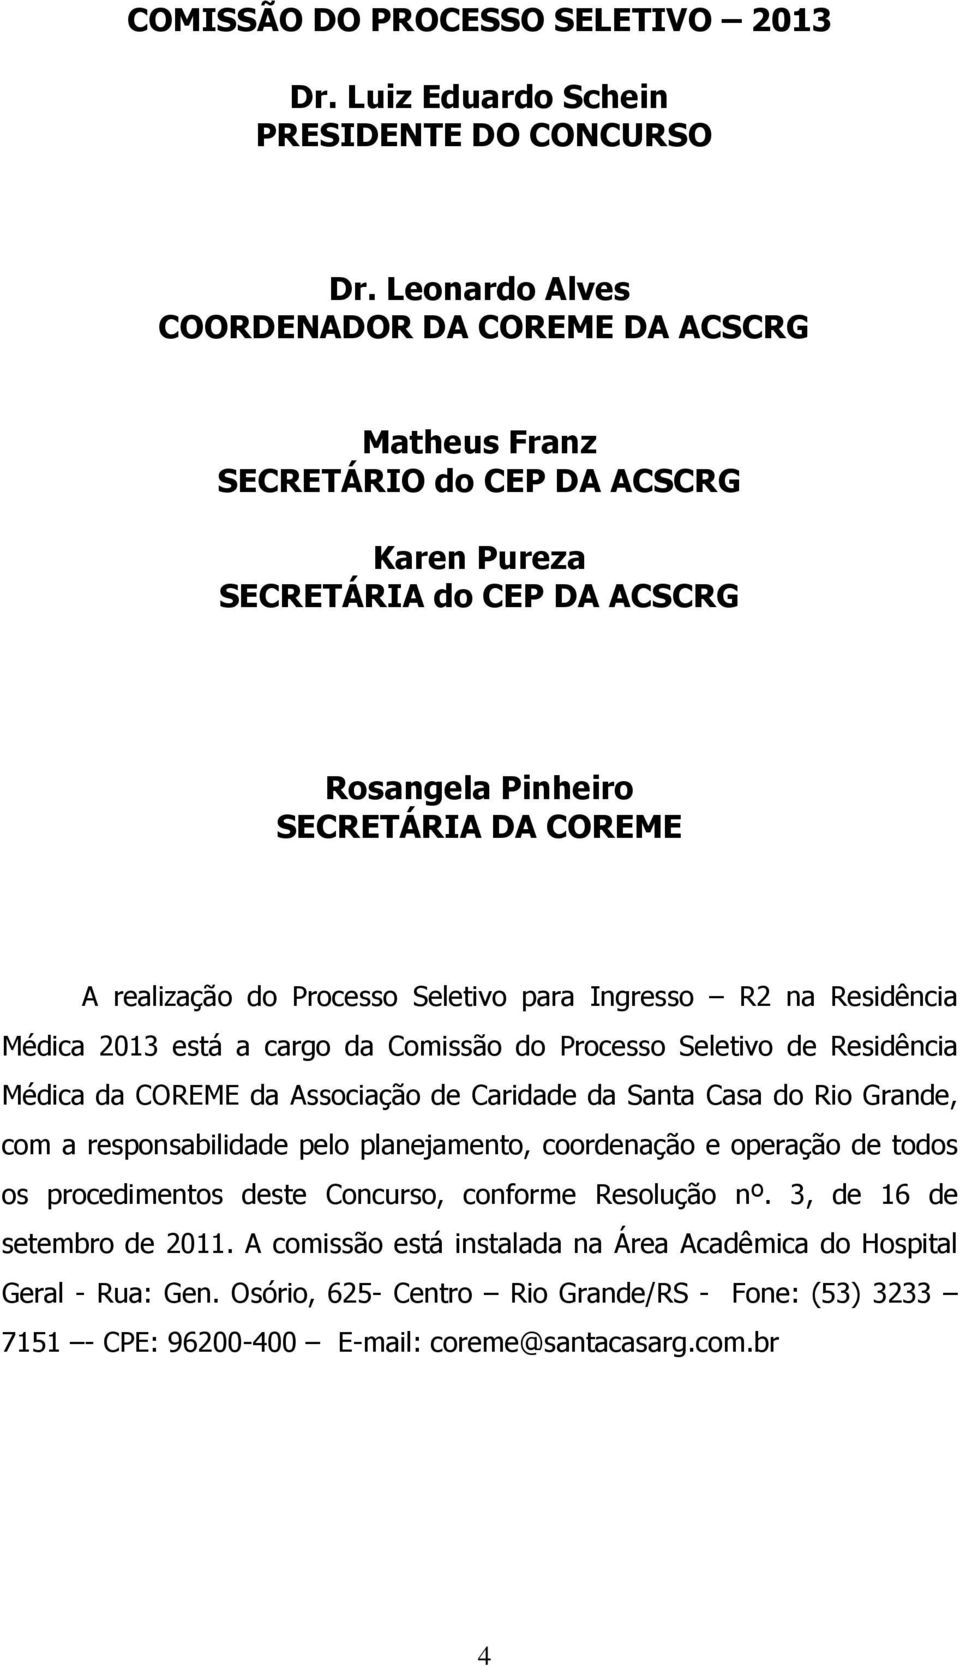 Seletivo para Ingresso R2 na Residência Médica 2013 está a cargo da Comissão do Processo Seletivo de Residência Médica da COREME da Associação de Caridade da Santa Casa do Rio Grande, com a